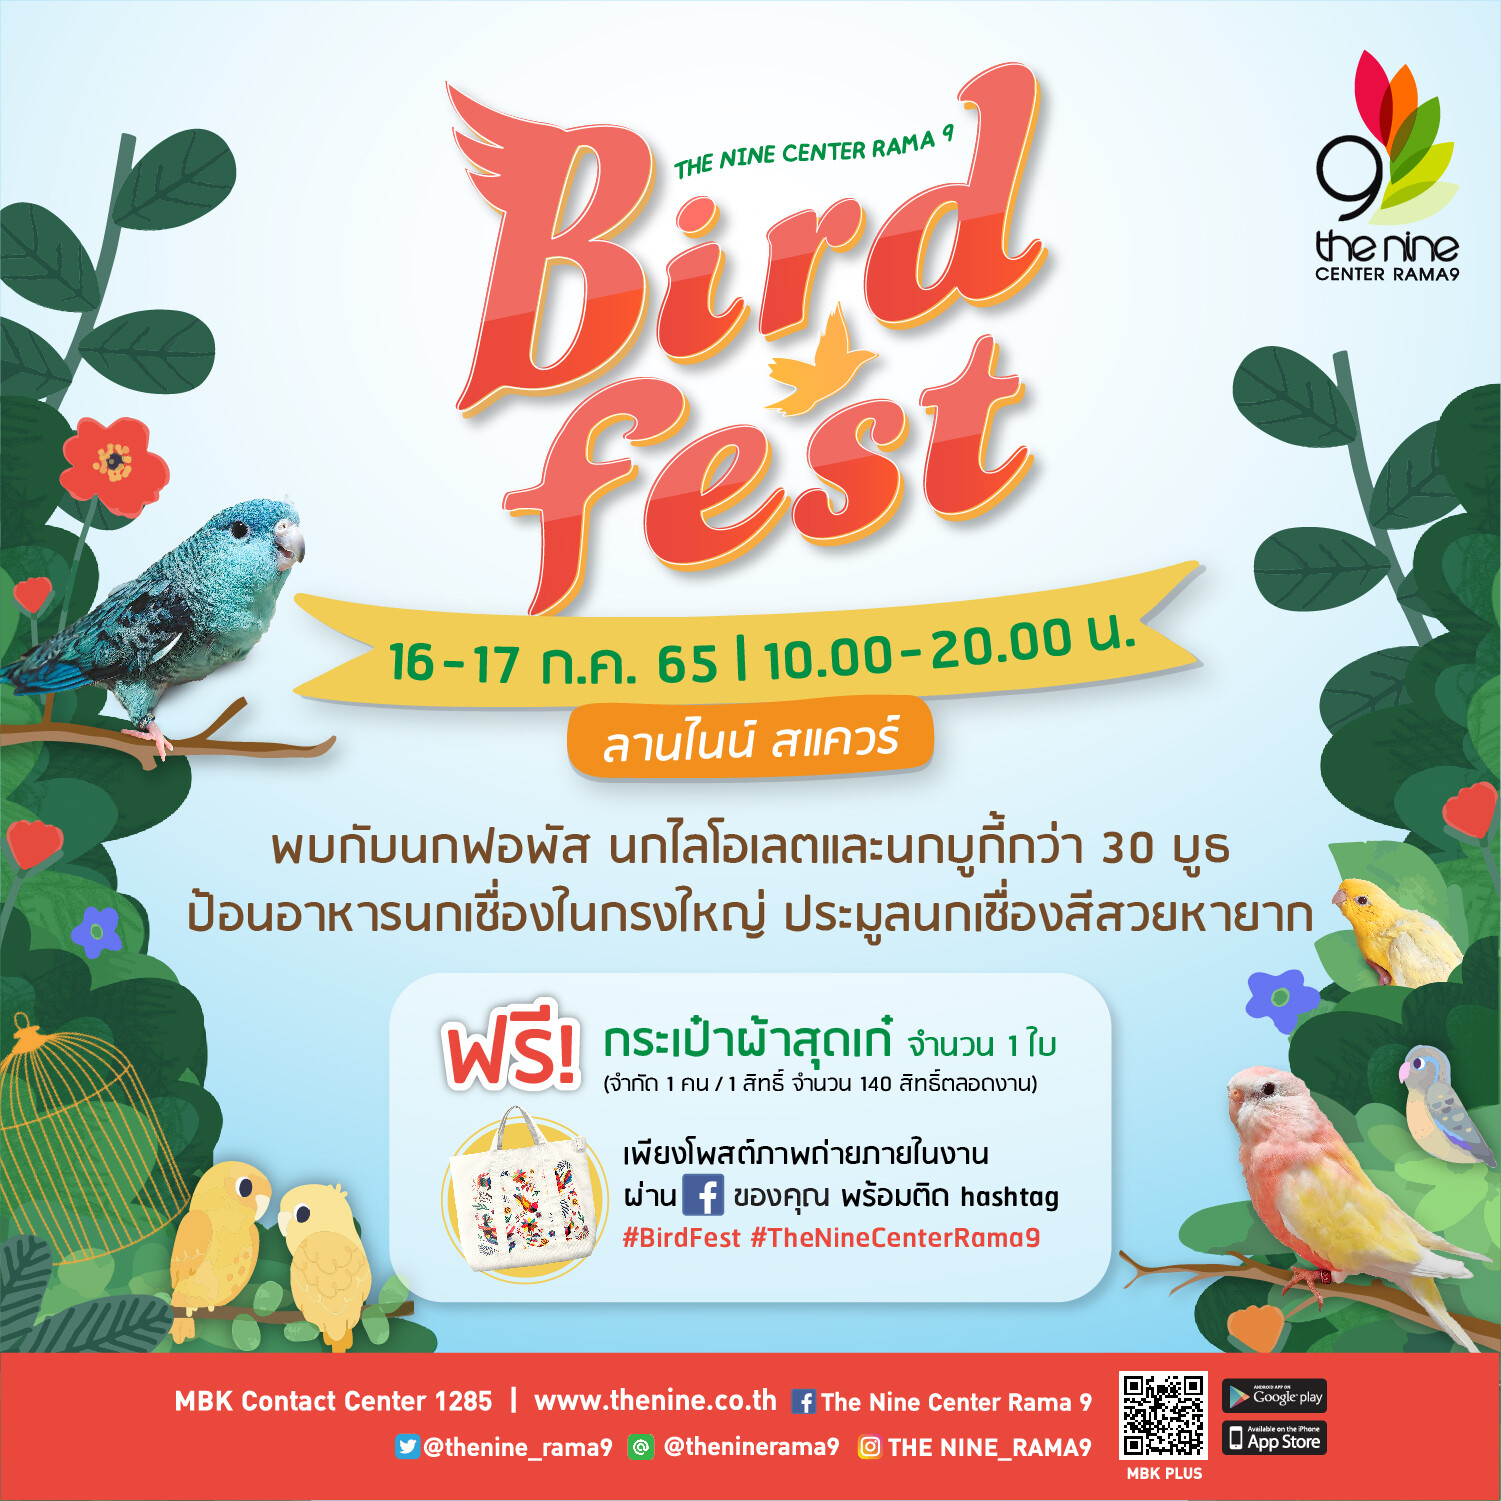 เดอะไนน์ เซ็นเตอร์ พระราม 9 ตอกย้ำคอนเซ็ปต์ Pet Friendly จัดงาน "Bird Fest" เอาใจคนรักนกพันธุ์จิ๋วสีสวย และนกเชื่องสุดน่ารัก